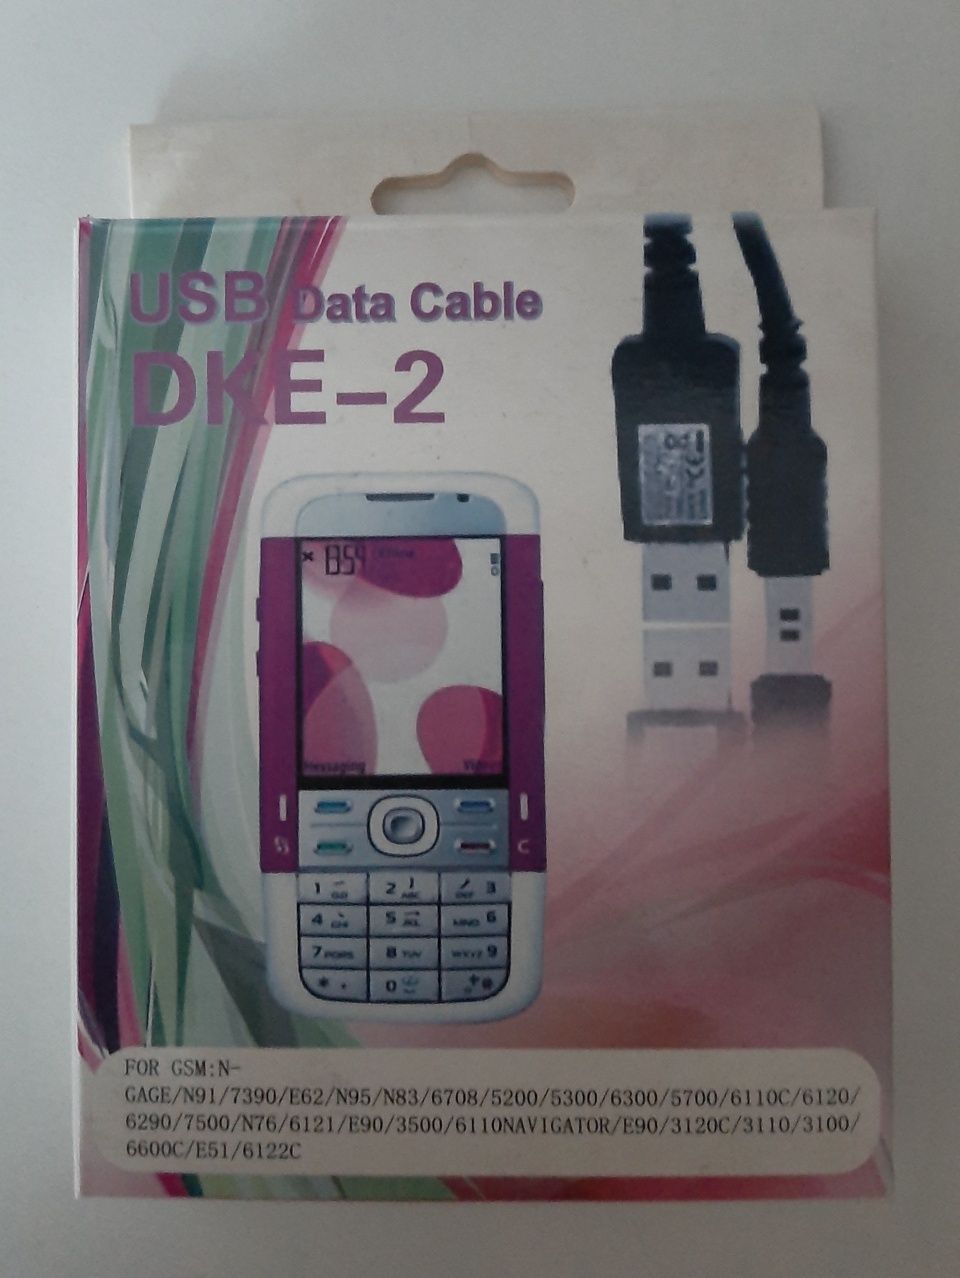 USB-кабель Nokia DKE-2